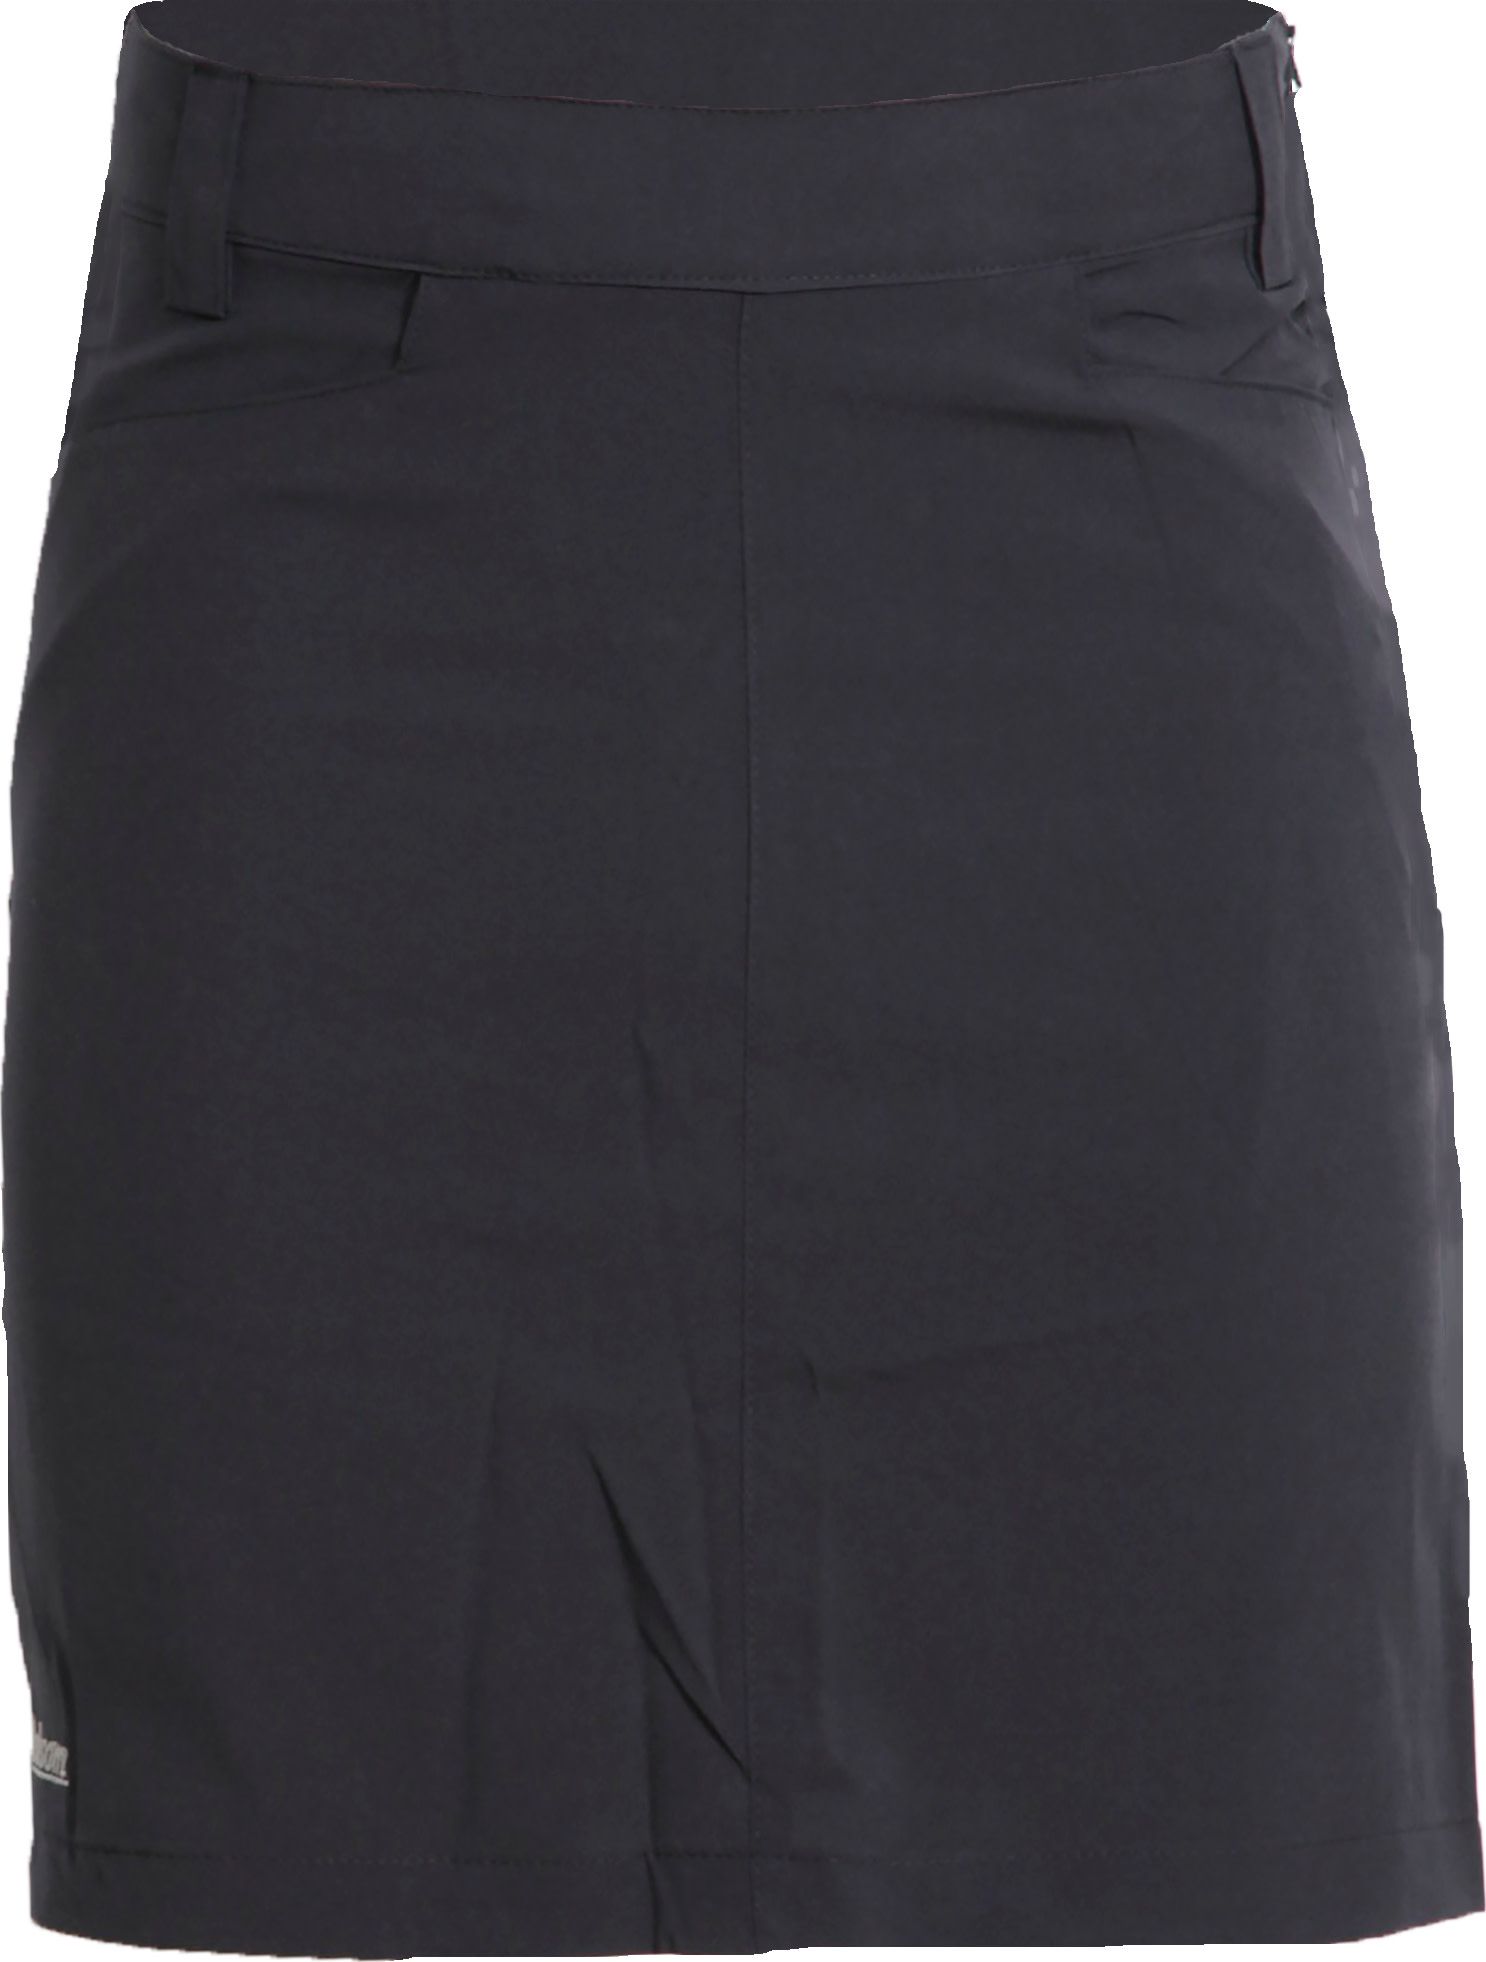 Women's Sanda Skirt II Black